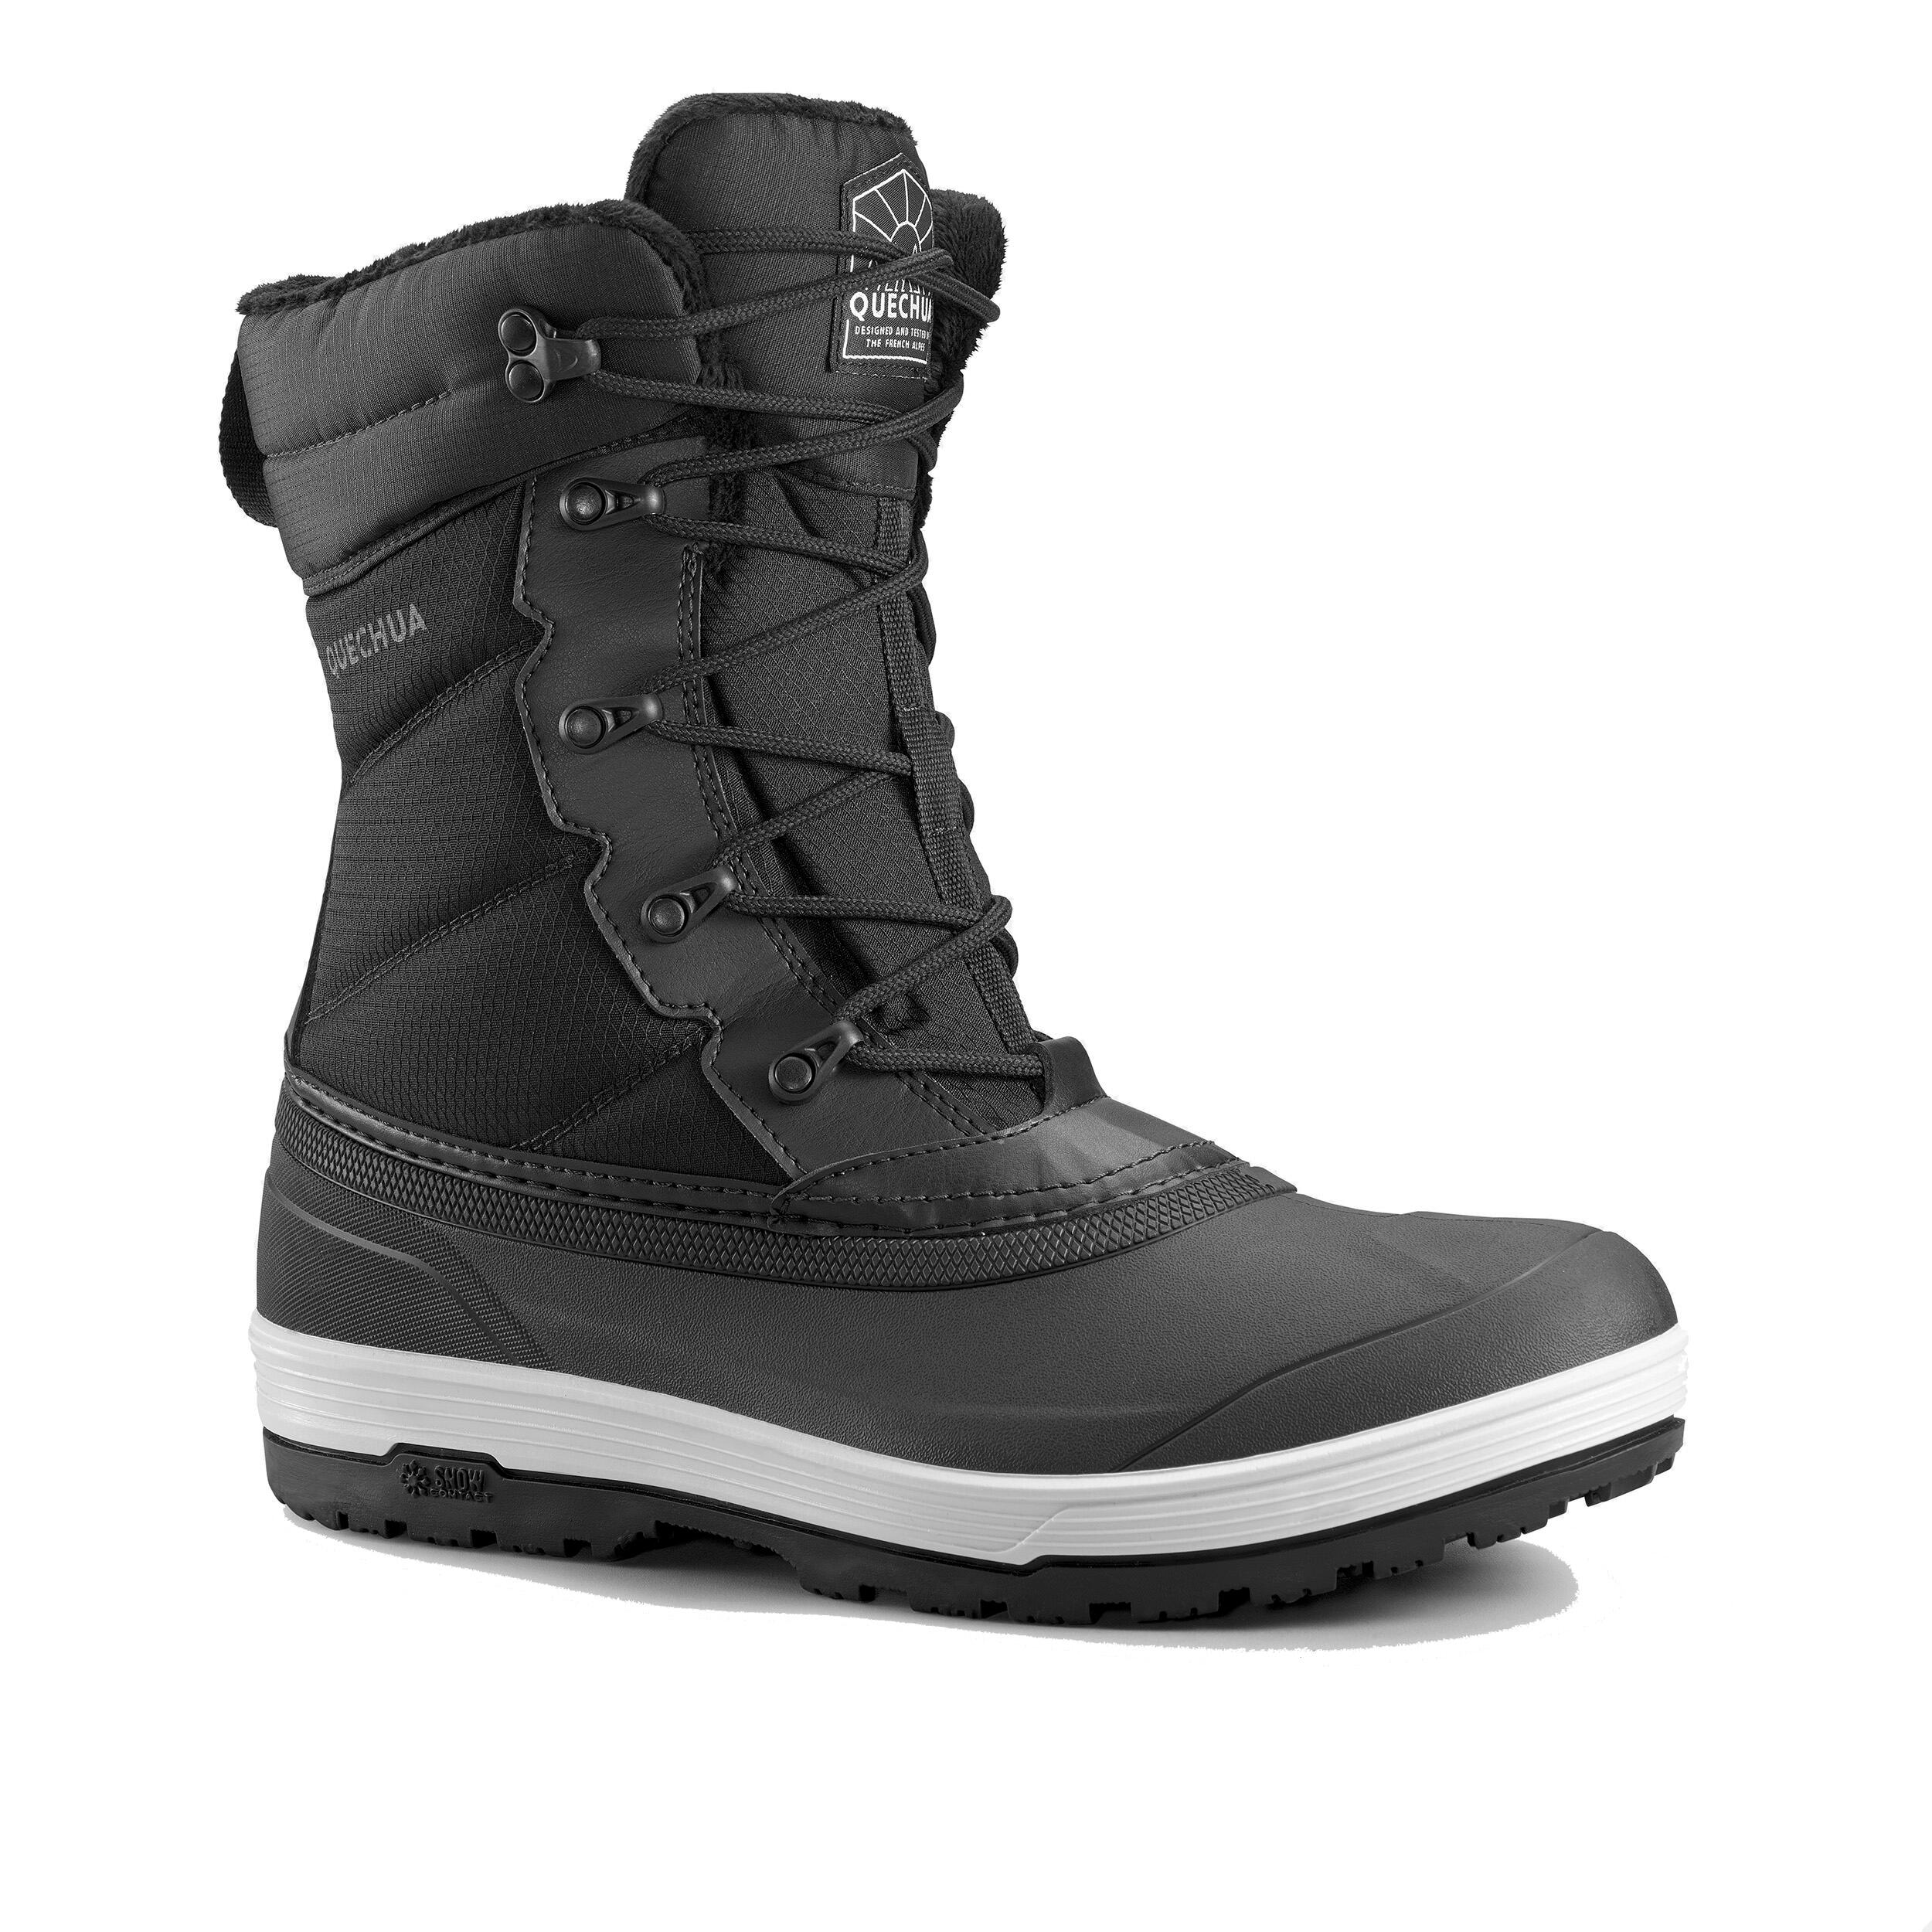 HERREN Schuhe Waterproof Grau Rabatt 62 % Quechua Stiefel 